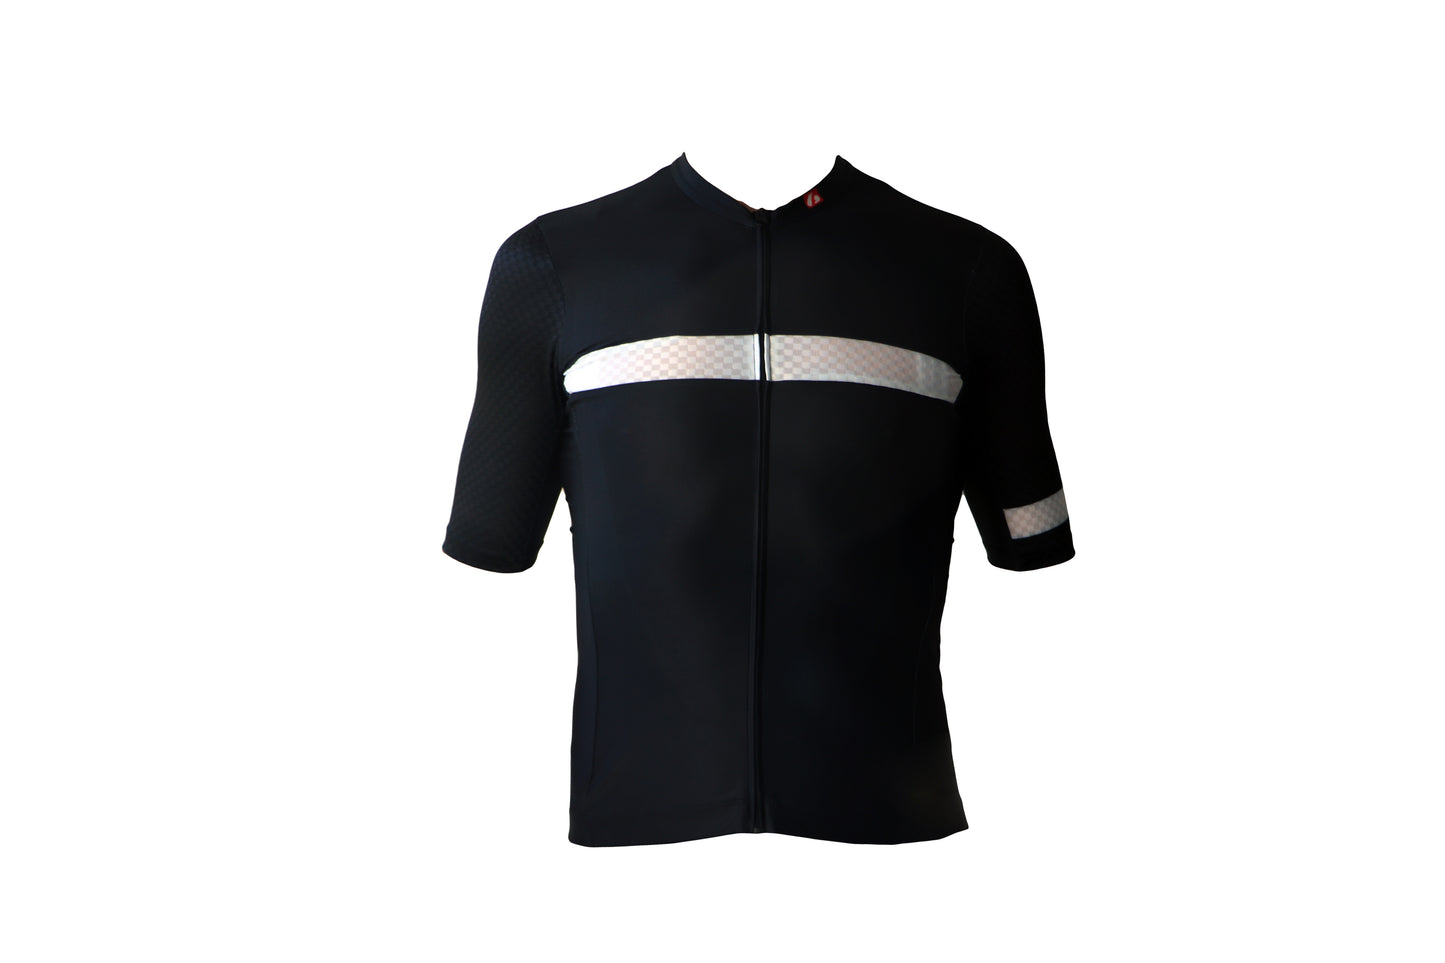 Cyklistický pánský dres - krátký rukáv, černo-bílá